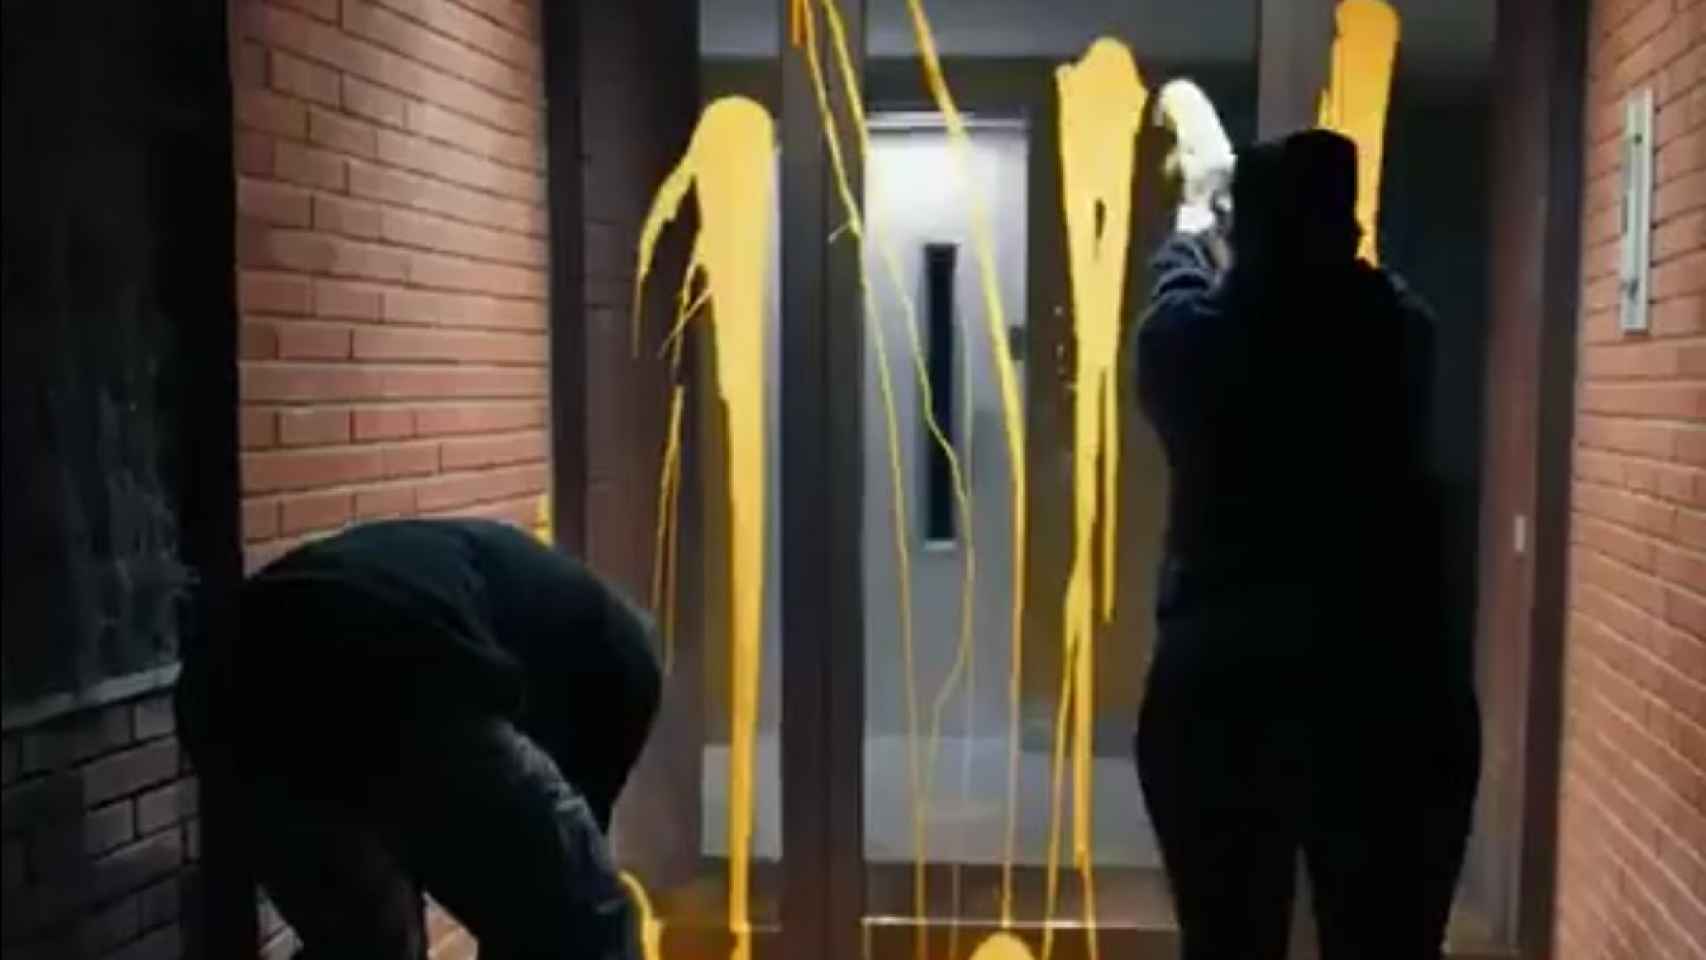 Los independentistas arrojaron pintura amarilla en el portal de la casa del juez.